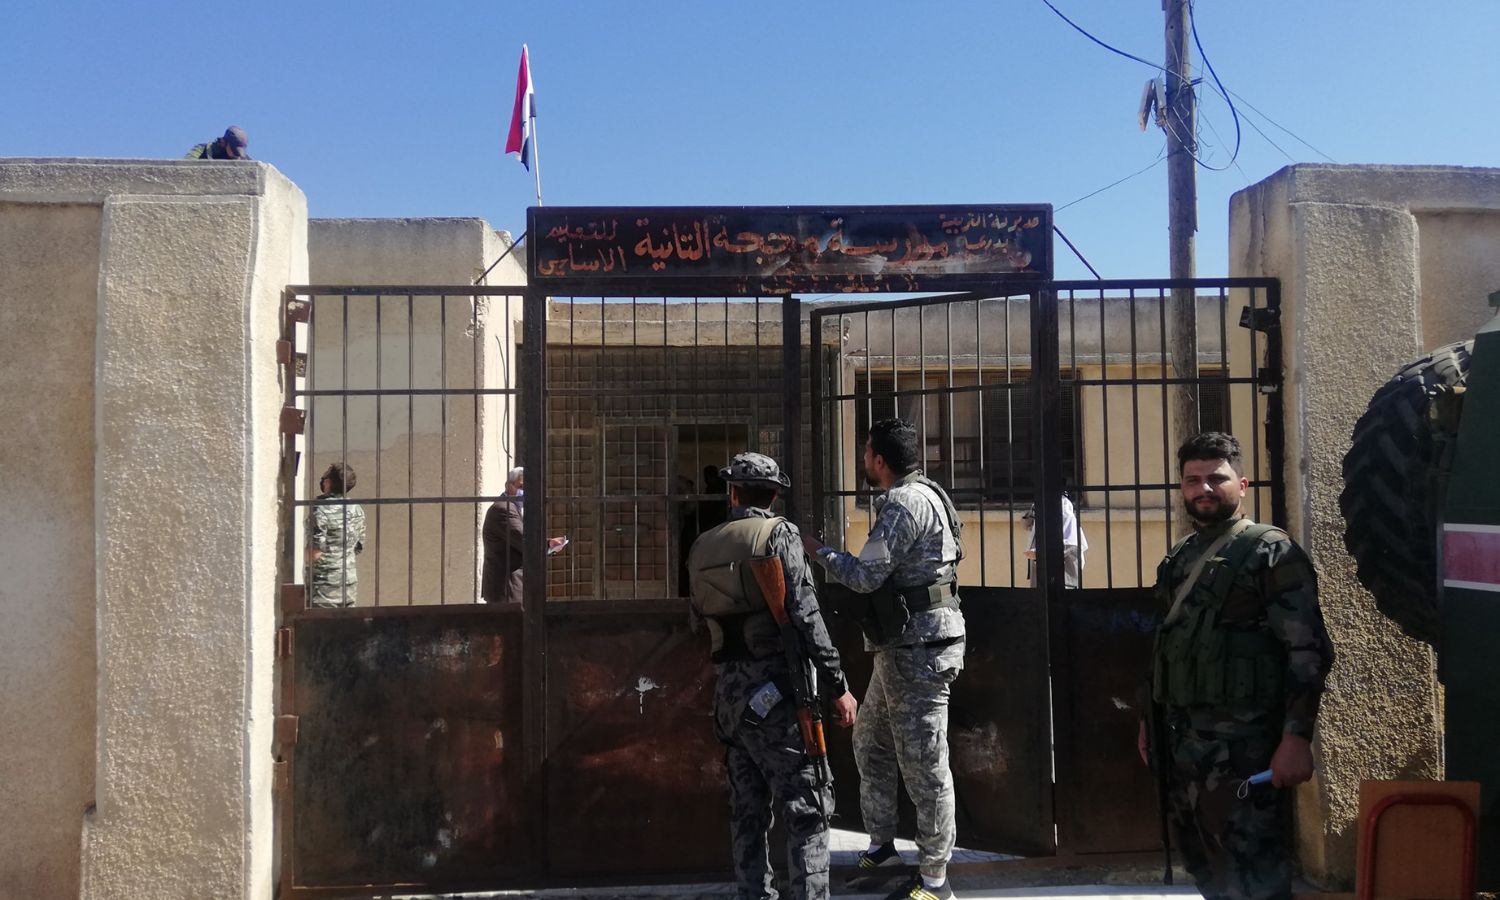 "تسوية" قوات النظام للمطلوبين في بلدة محجة بريف درعا- 23 من تشرين الأول 2021 (أتارعا نيوز/ فيس بوك)